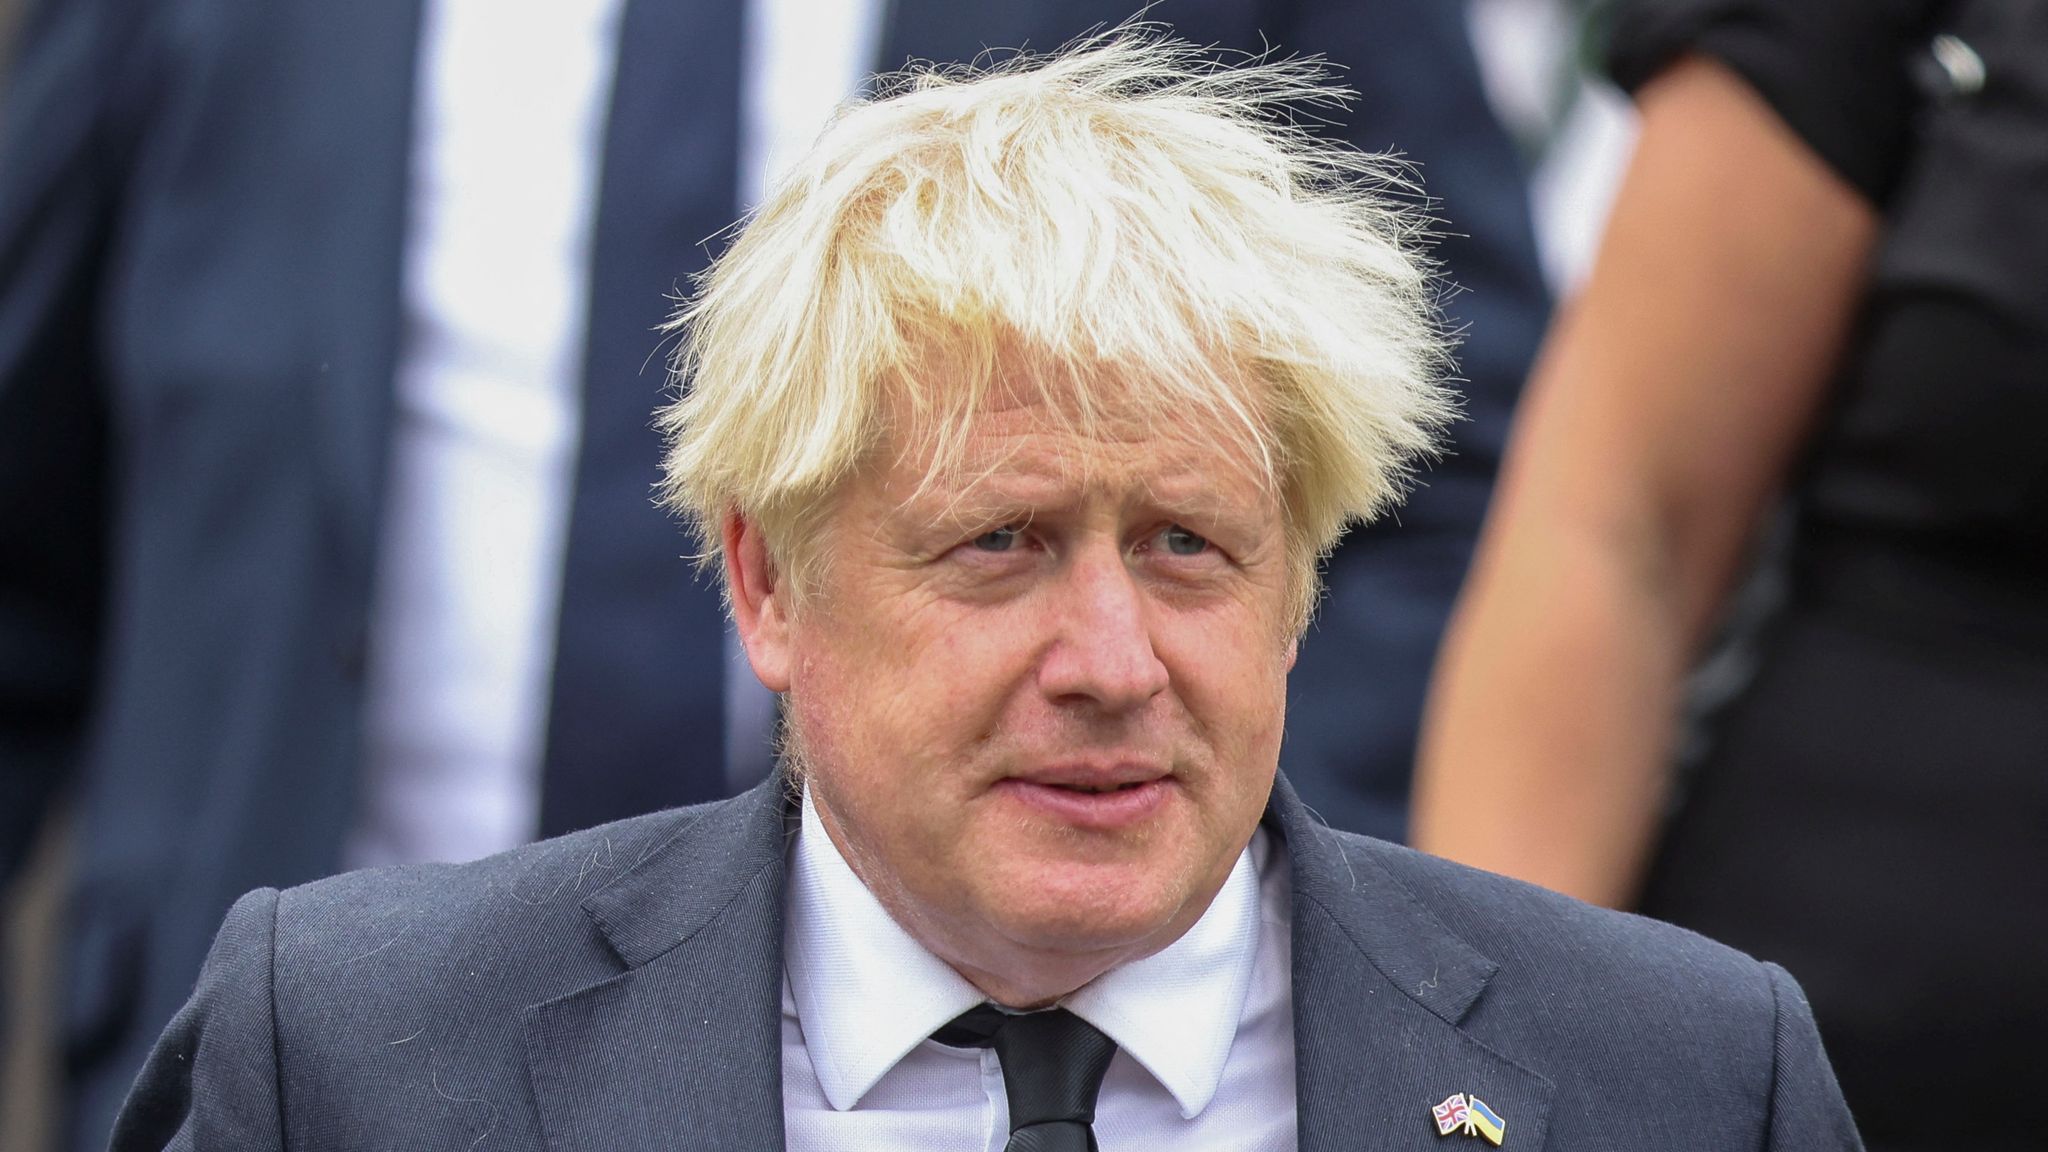 Raporti i Partygate/ Boris Johnson jep dorëheqjen si deputet